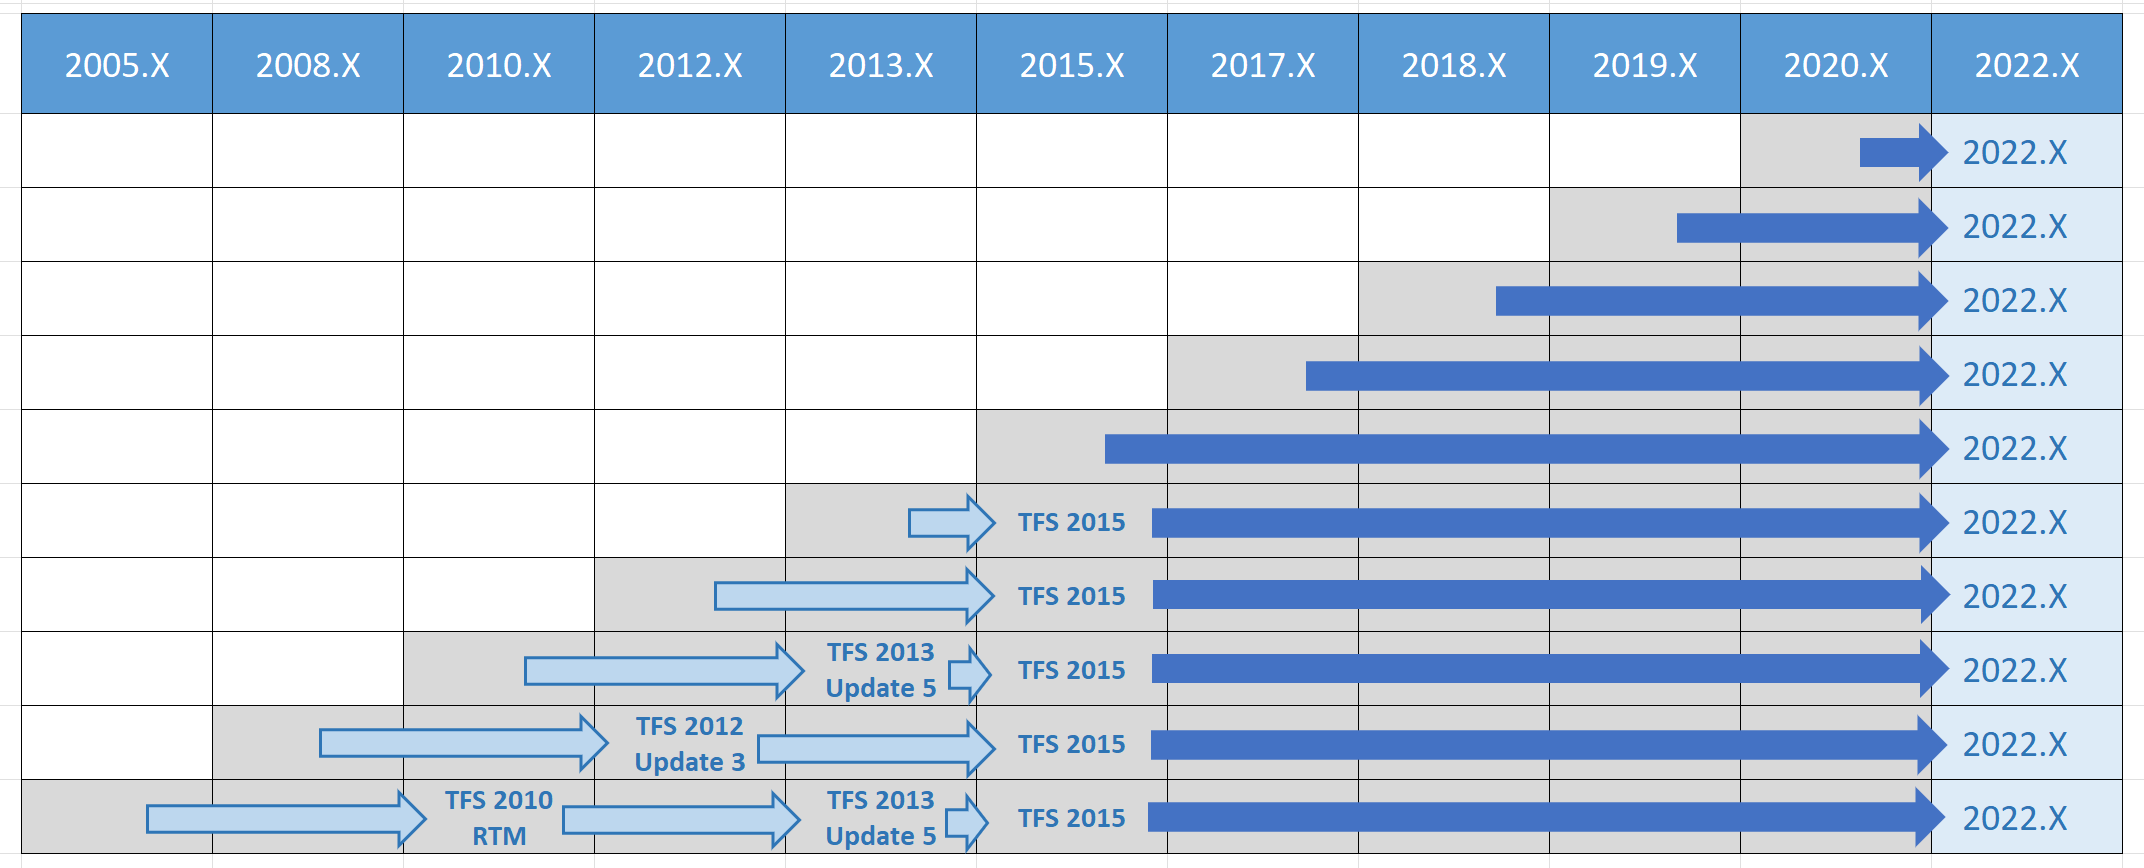 Matriks jalur Peningkatan Azure DevOps 2022 untuk semua versi sebelumnya.